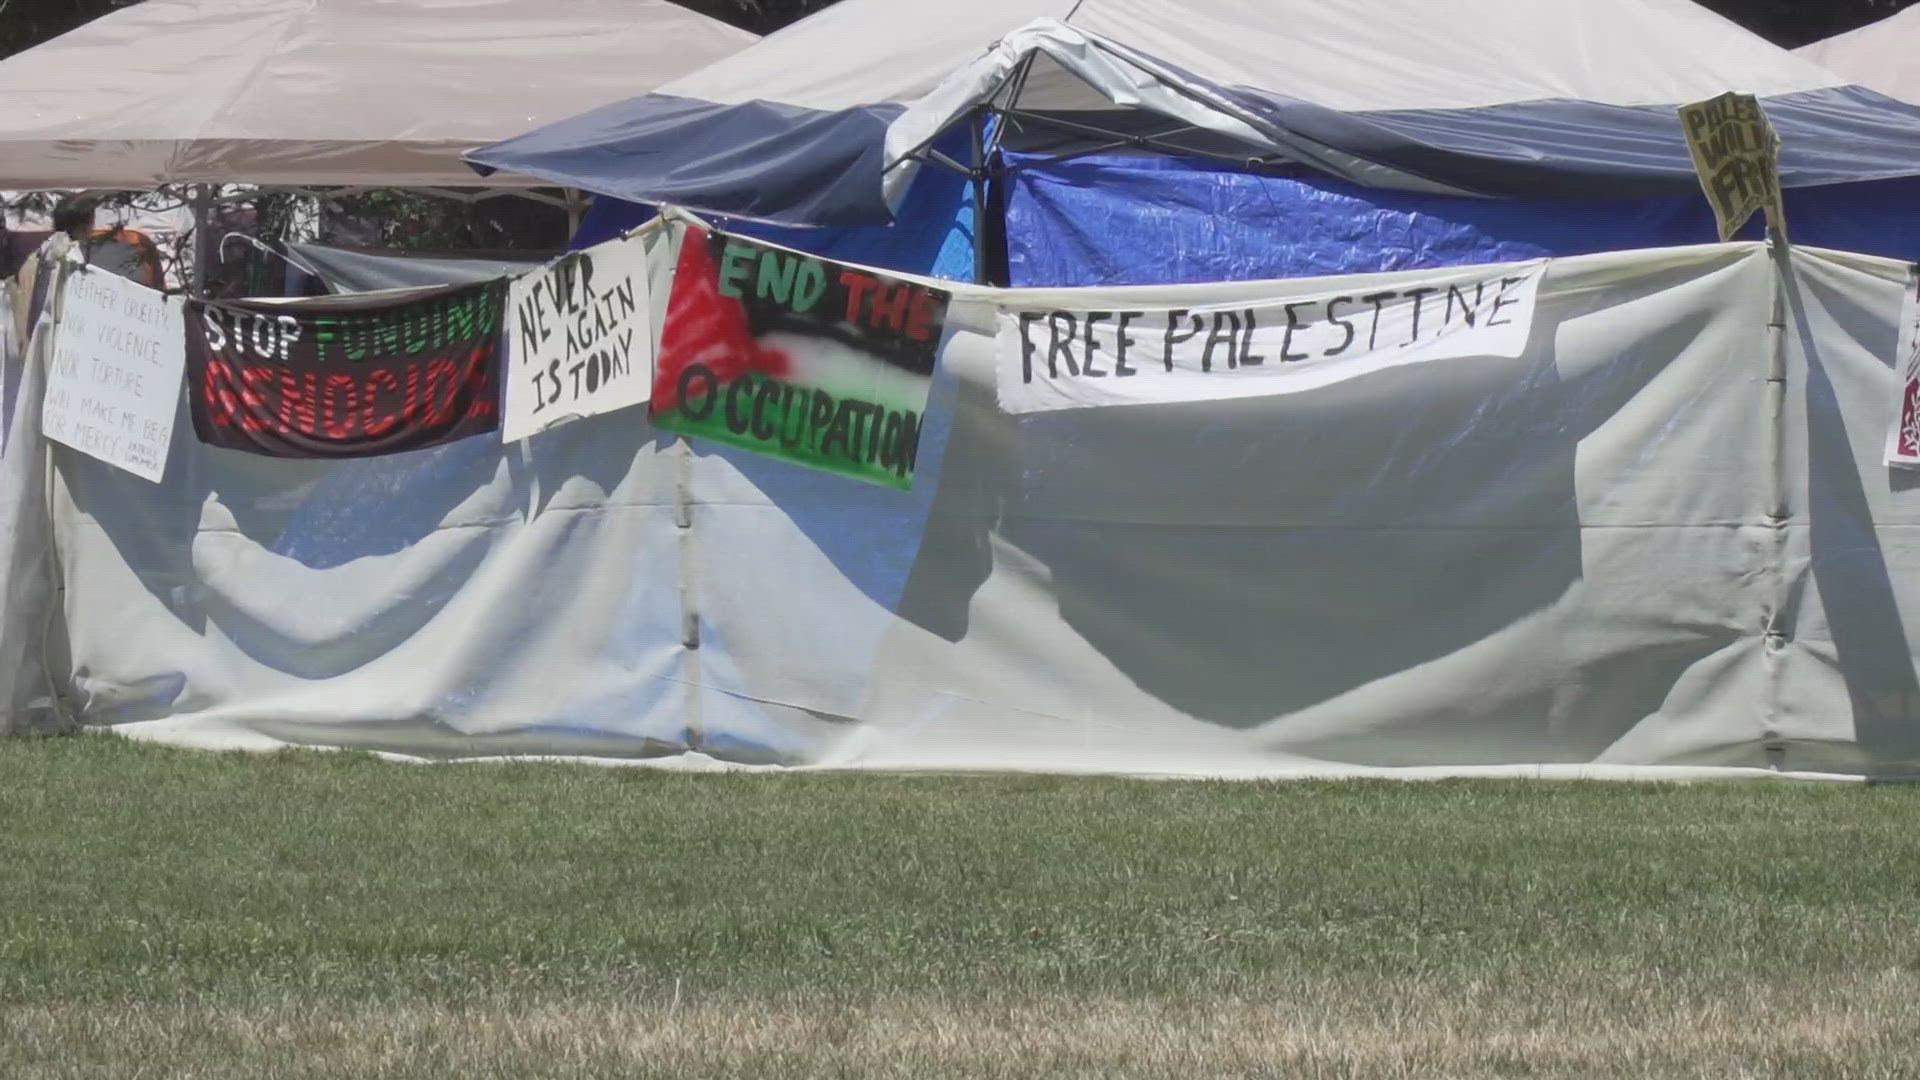 Veteran files a lawsuit against UC Davis due to pro-Palestine protest encampment